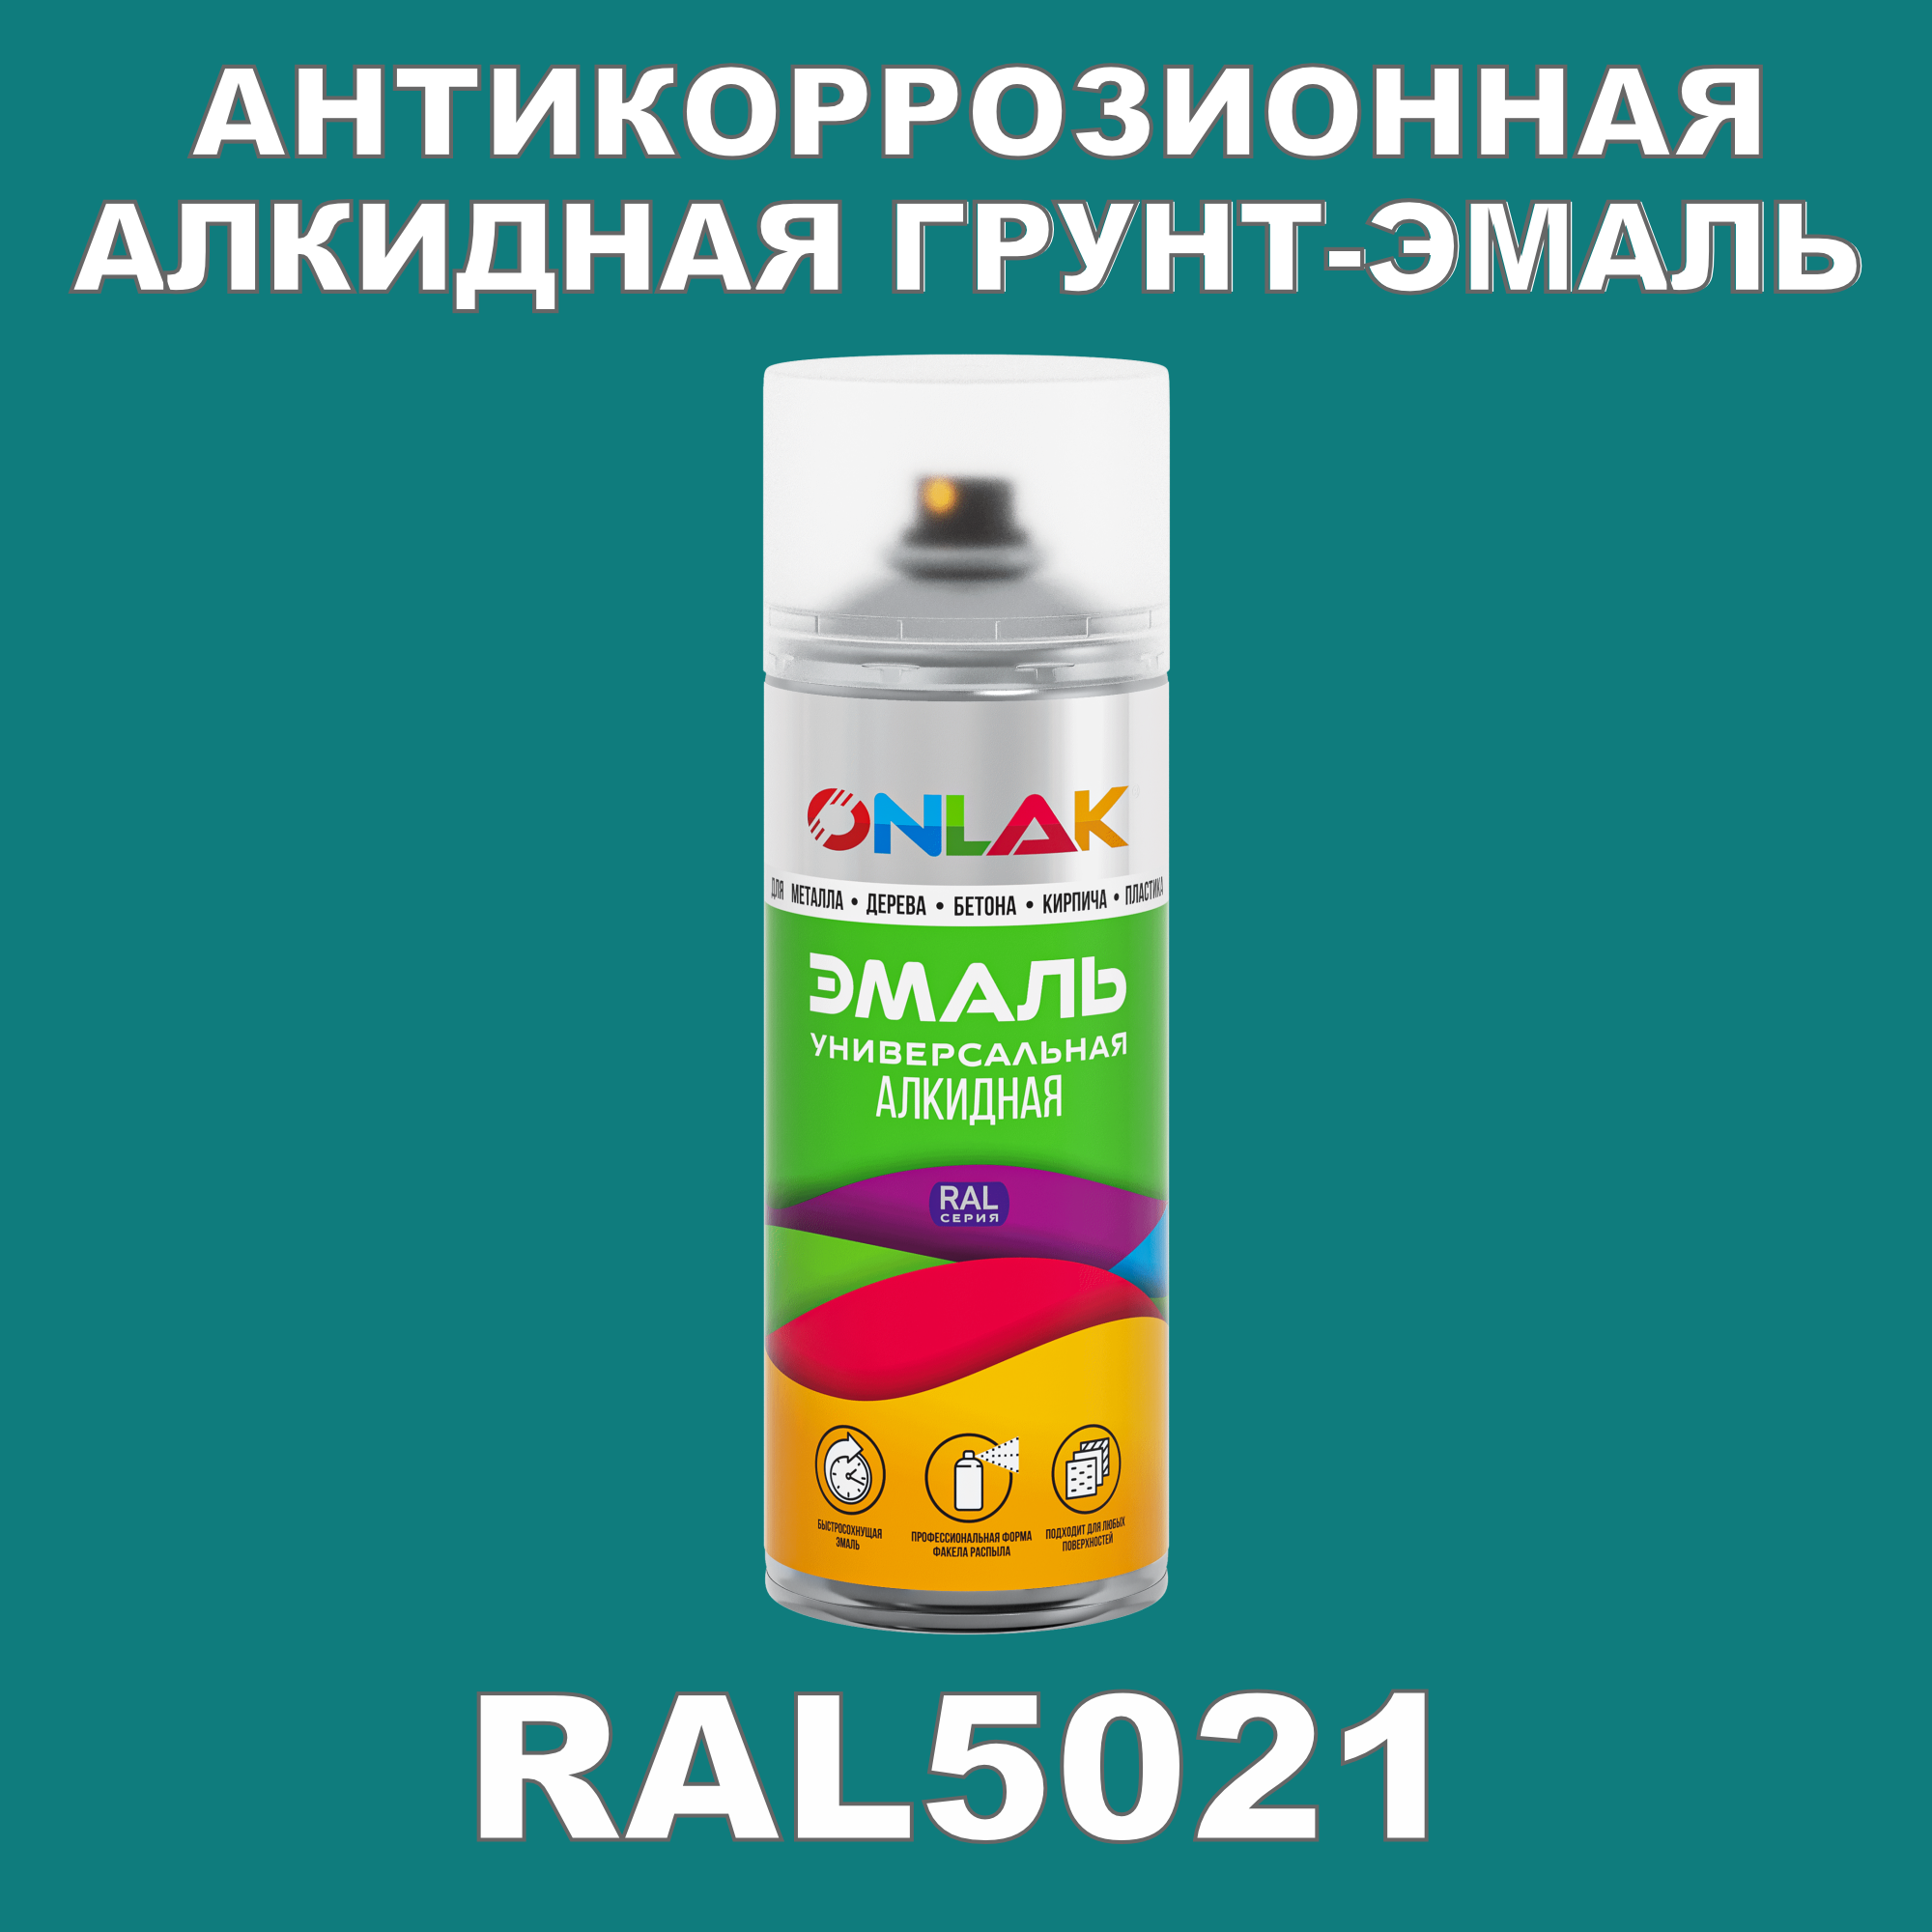 Антикоррозионная грунт-эмаль ONLAK RAL5021 полуматовая для металла и защиты от ржавчины